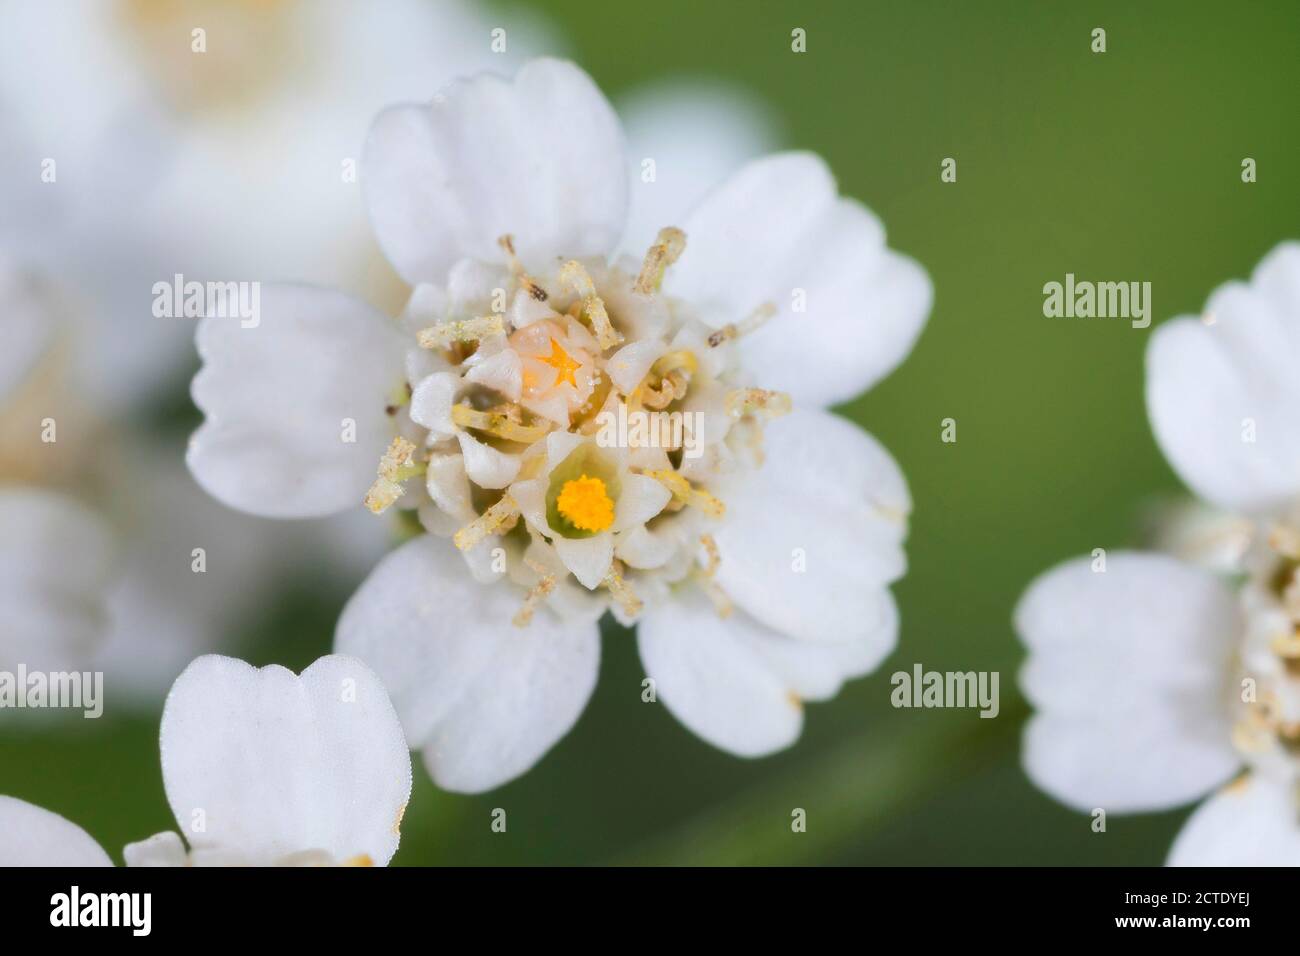 Yarrow, Common yarrow (Achillea millefolium), flowers, Germany Stock Photo